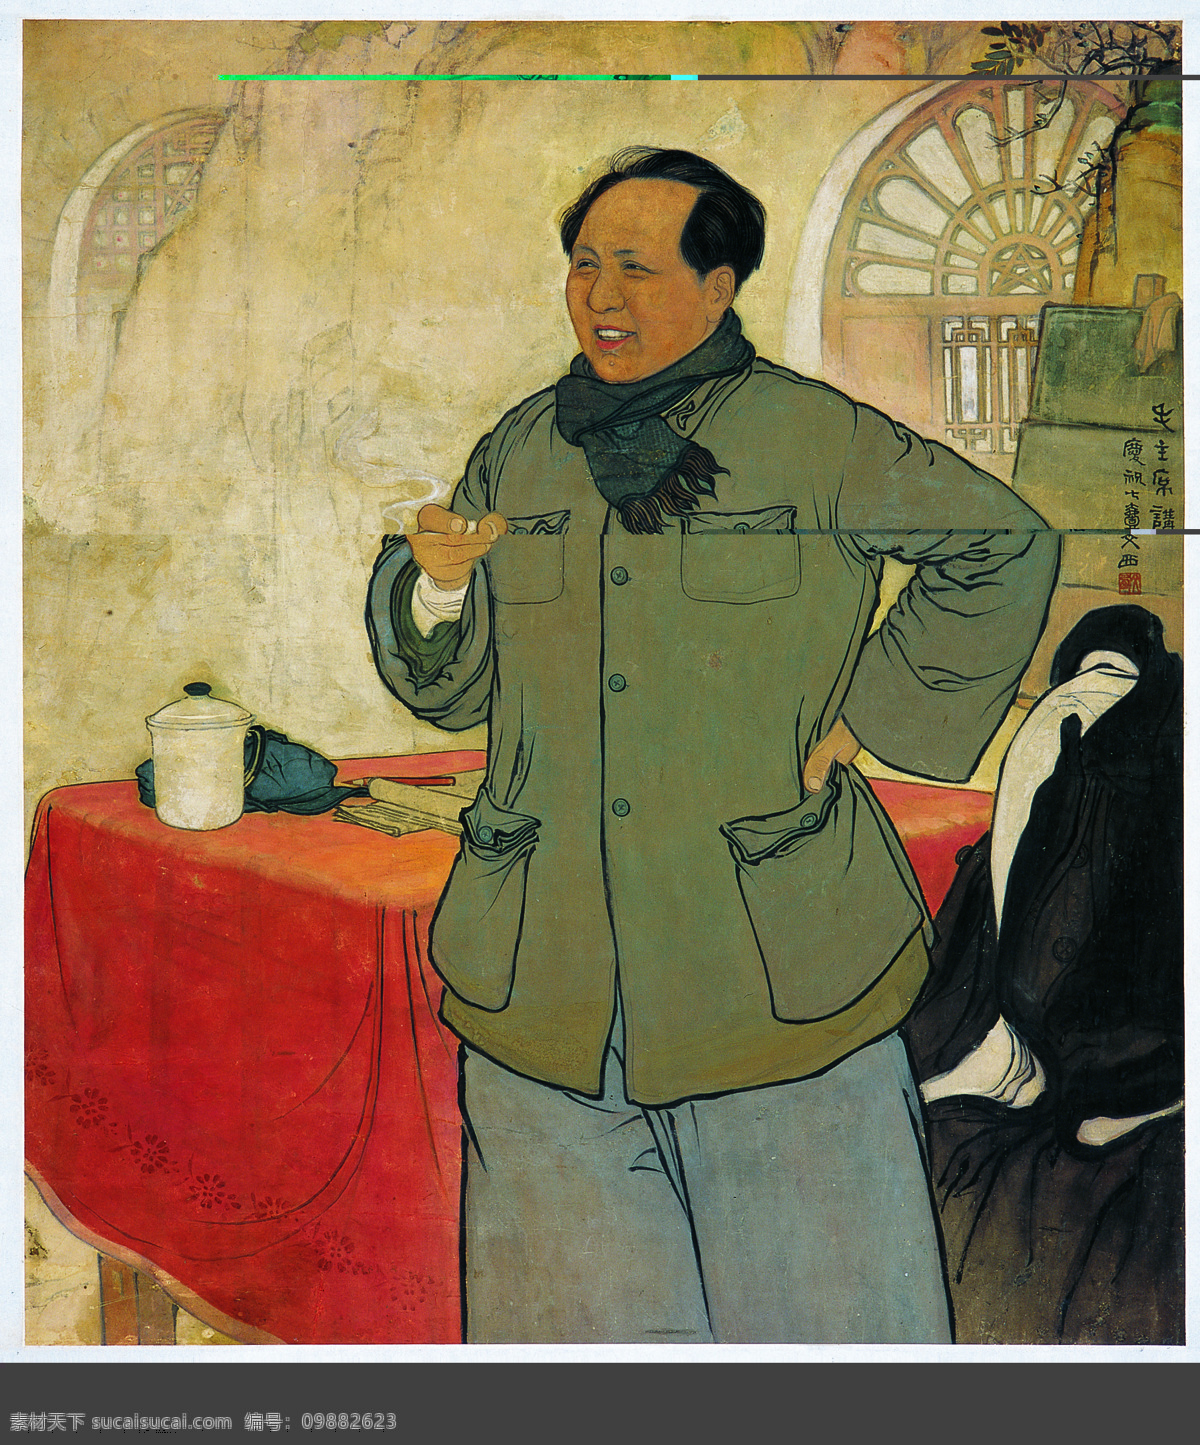 毛 主席 讲话 刘文西 国画人物 工笔 毛泽东 书画艺术 绘画书法 文化艺术